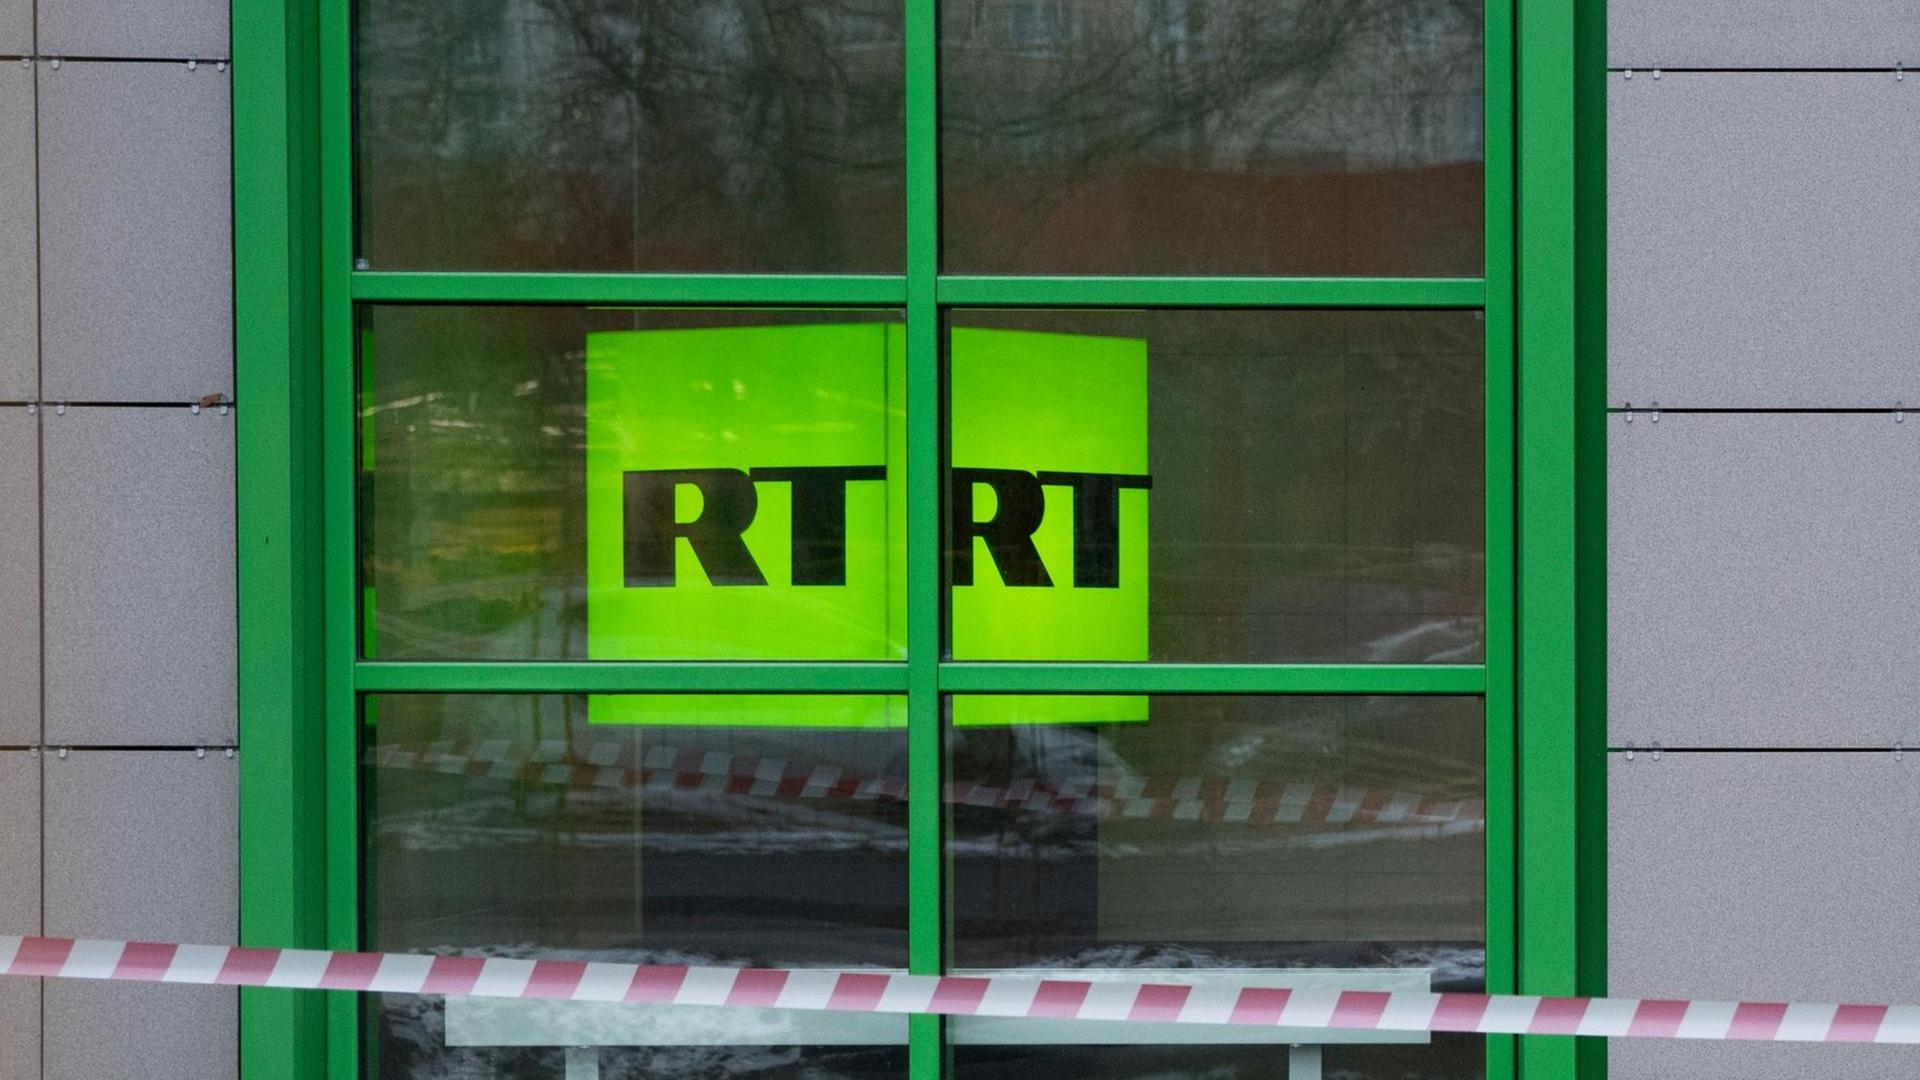 Das Logo von RT ist grün, darauf steht "RT".